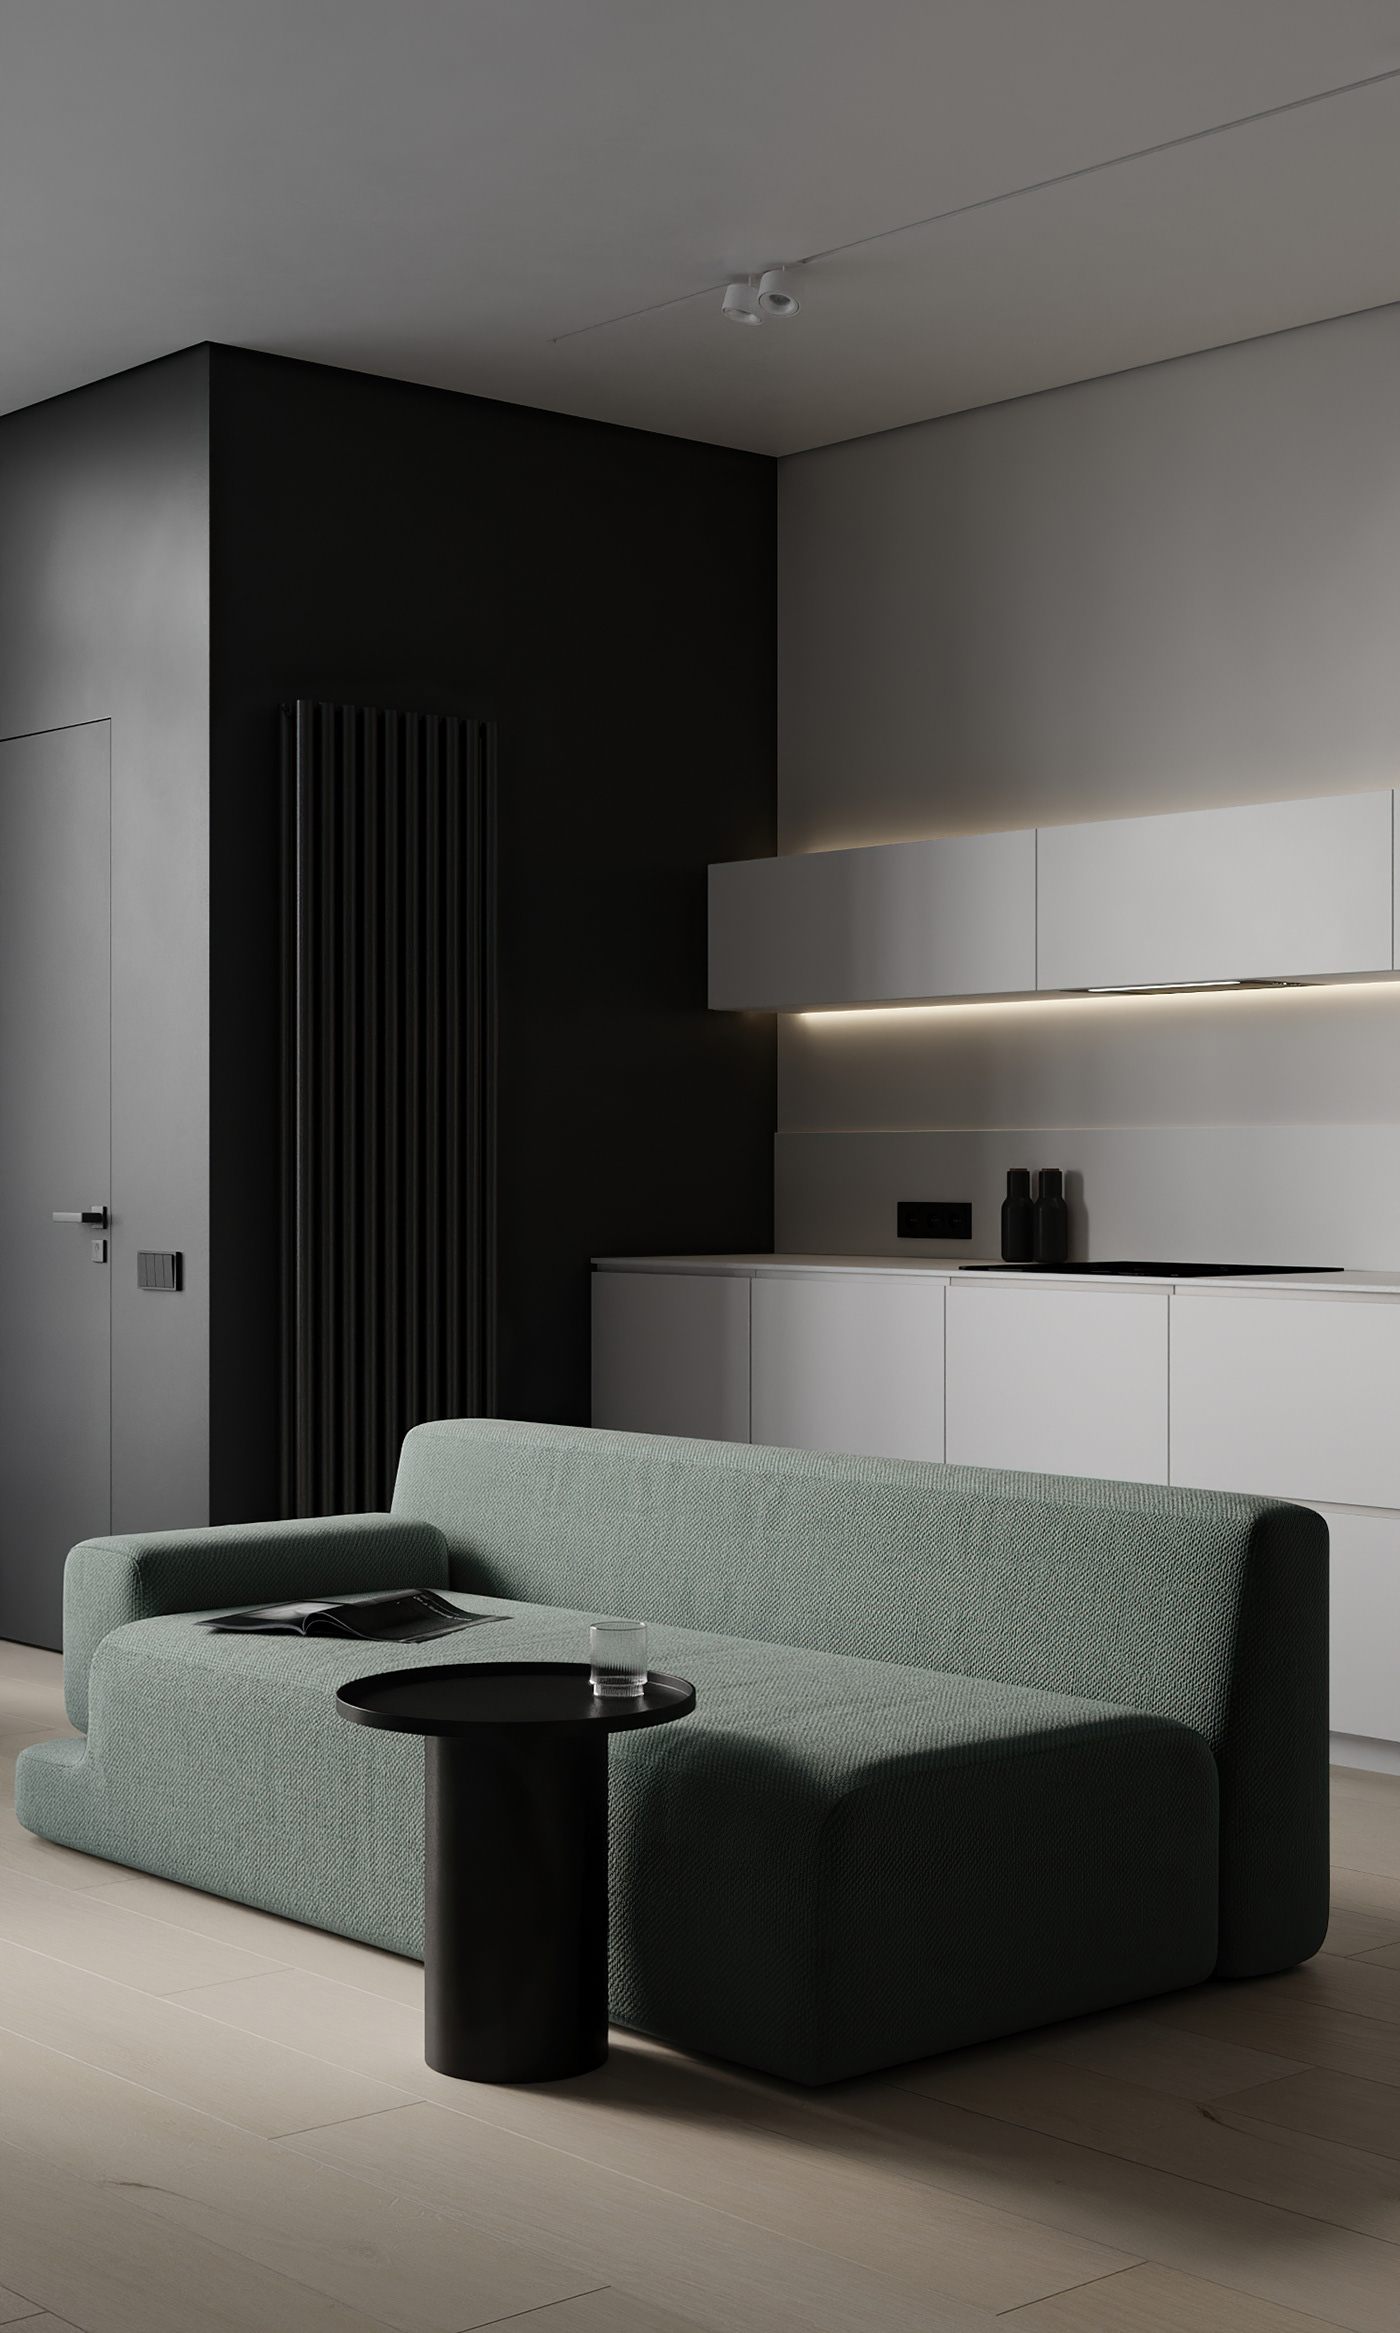 apartment apartment design bedroom design homedesign interior design  interiordesigner kitchen living room visualization